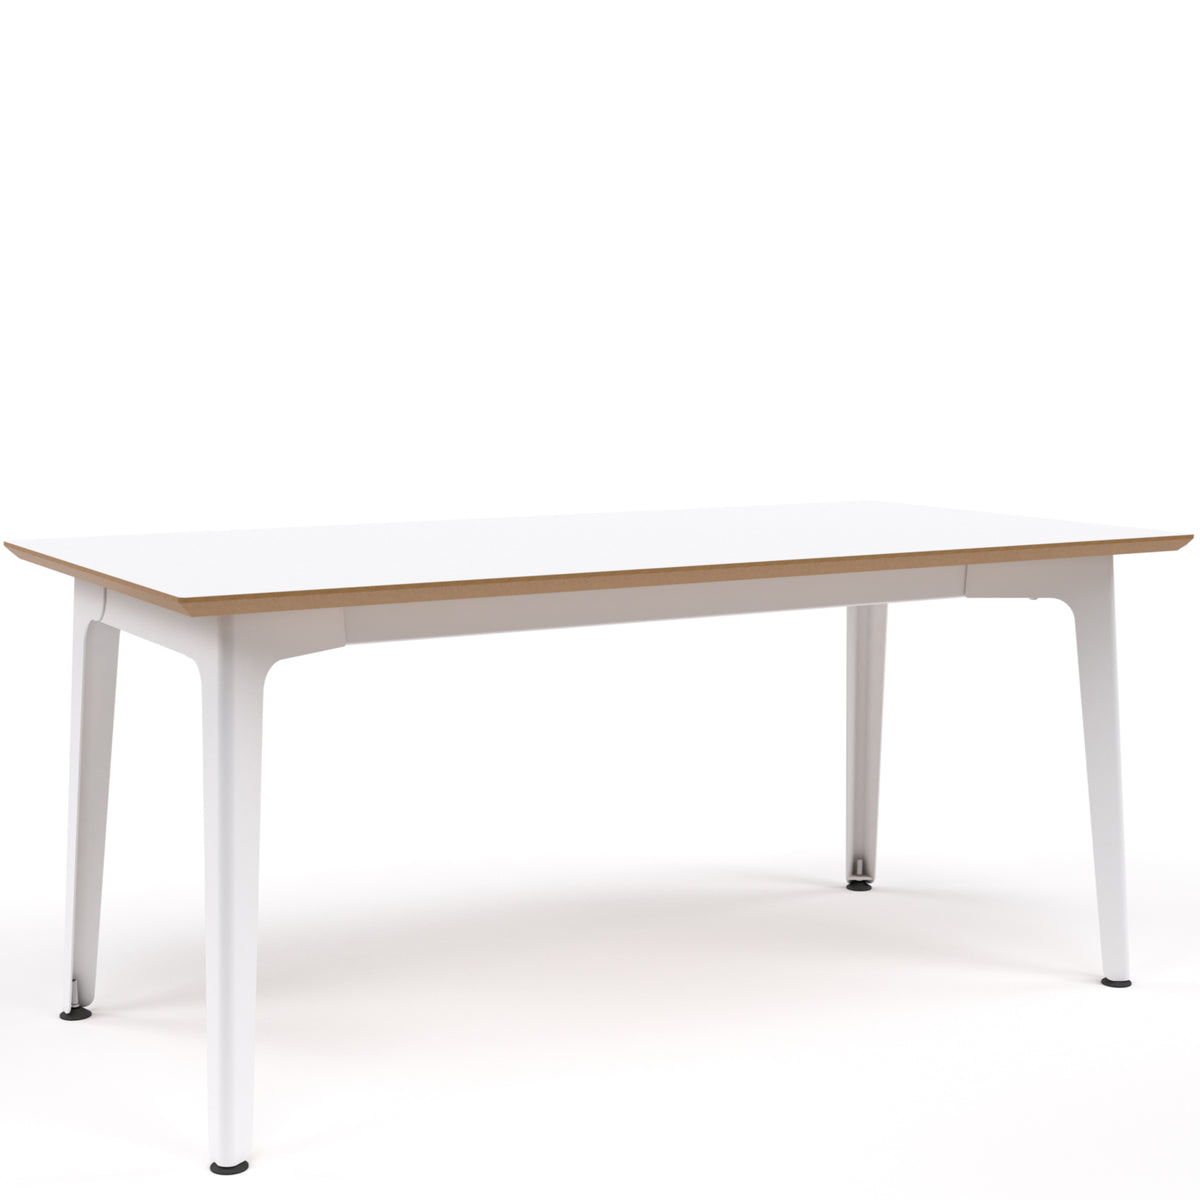 Fold Metal Table 2400x1000